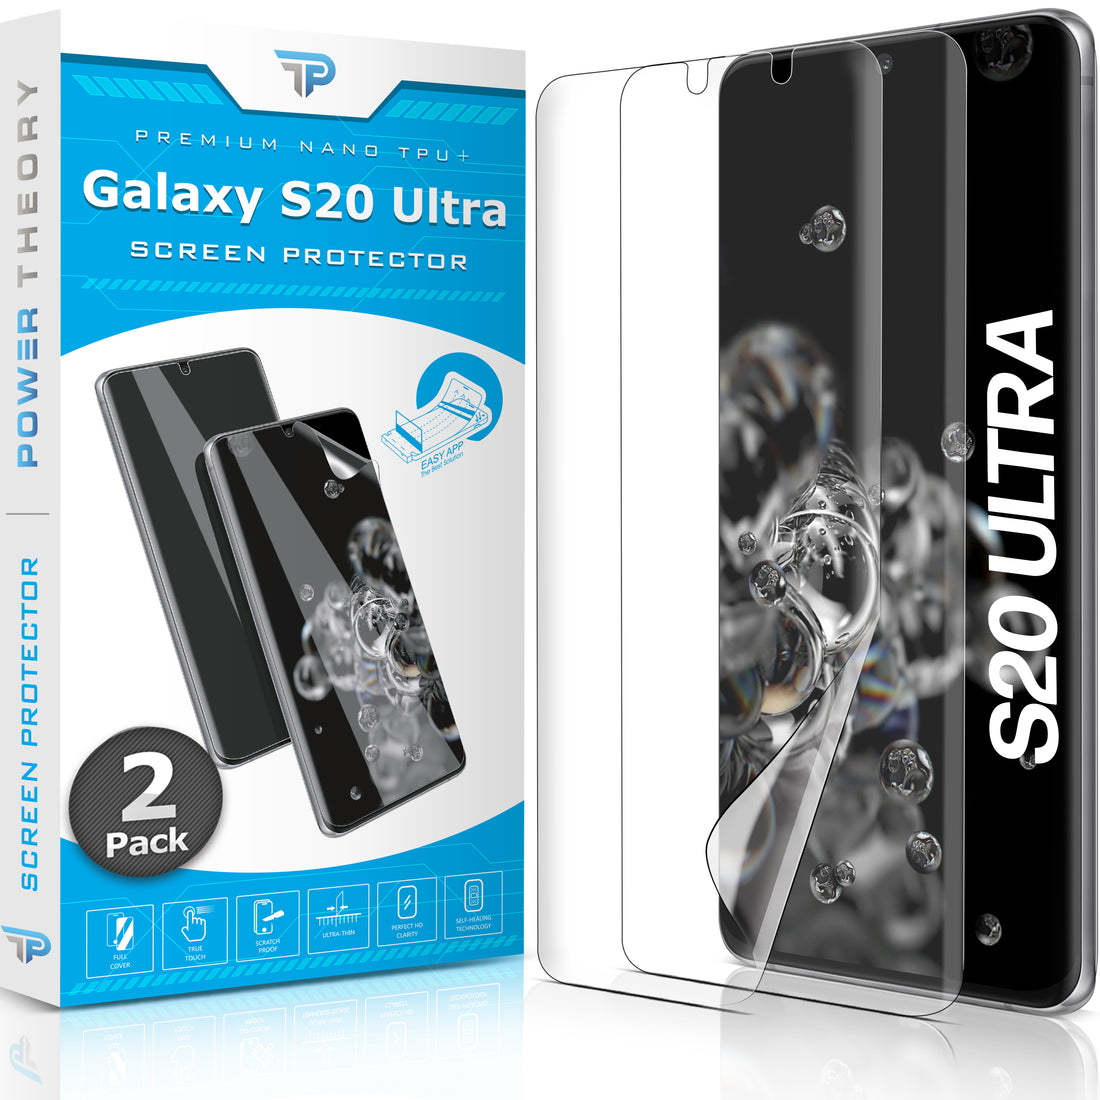 Samsung Galaxy S20 Ultra TPU Anti-Scratch Screen Protector Film [2-Pack] Preview #1